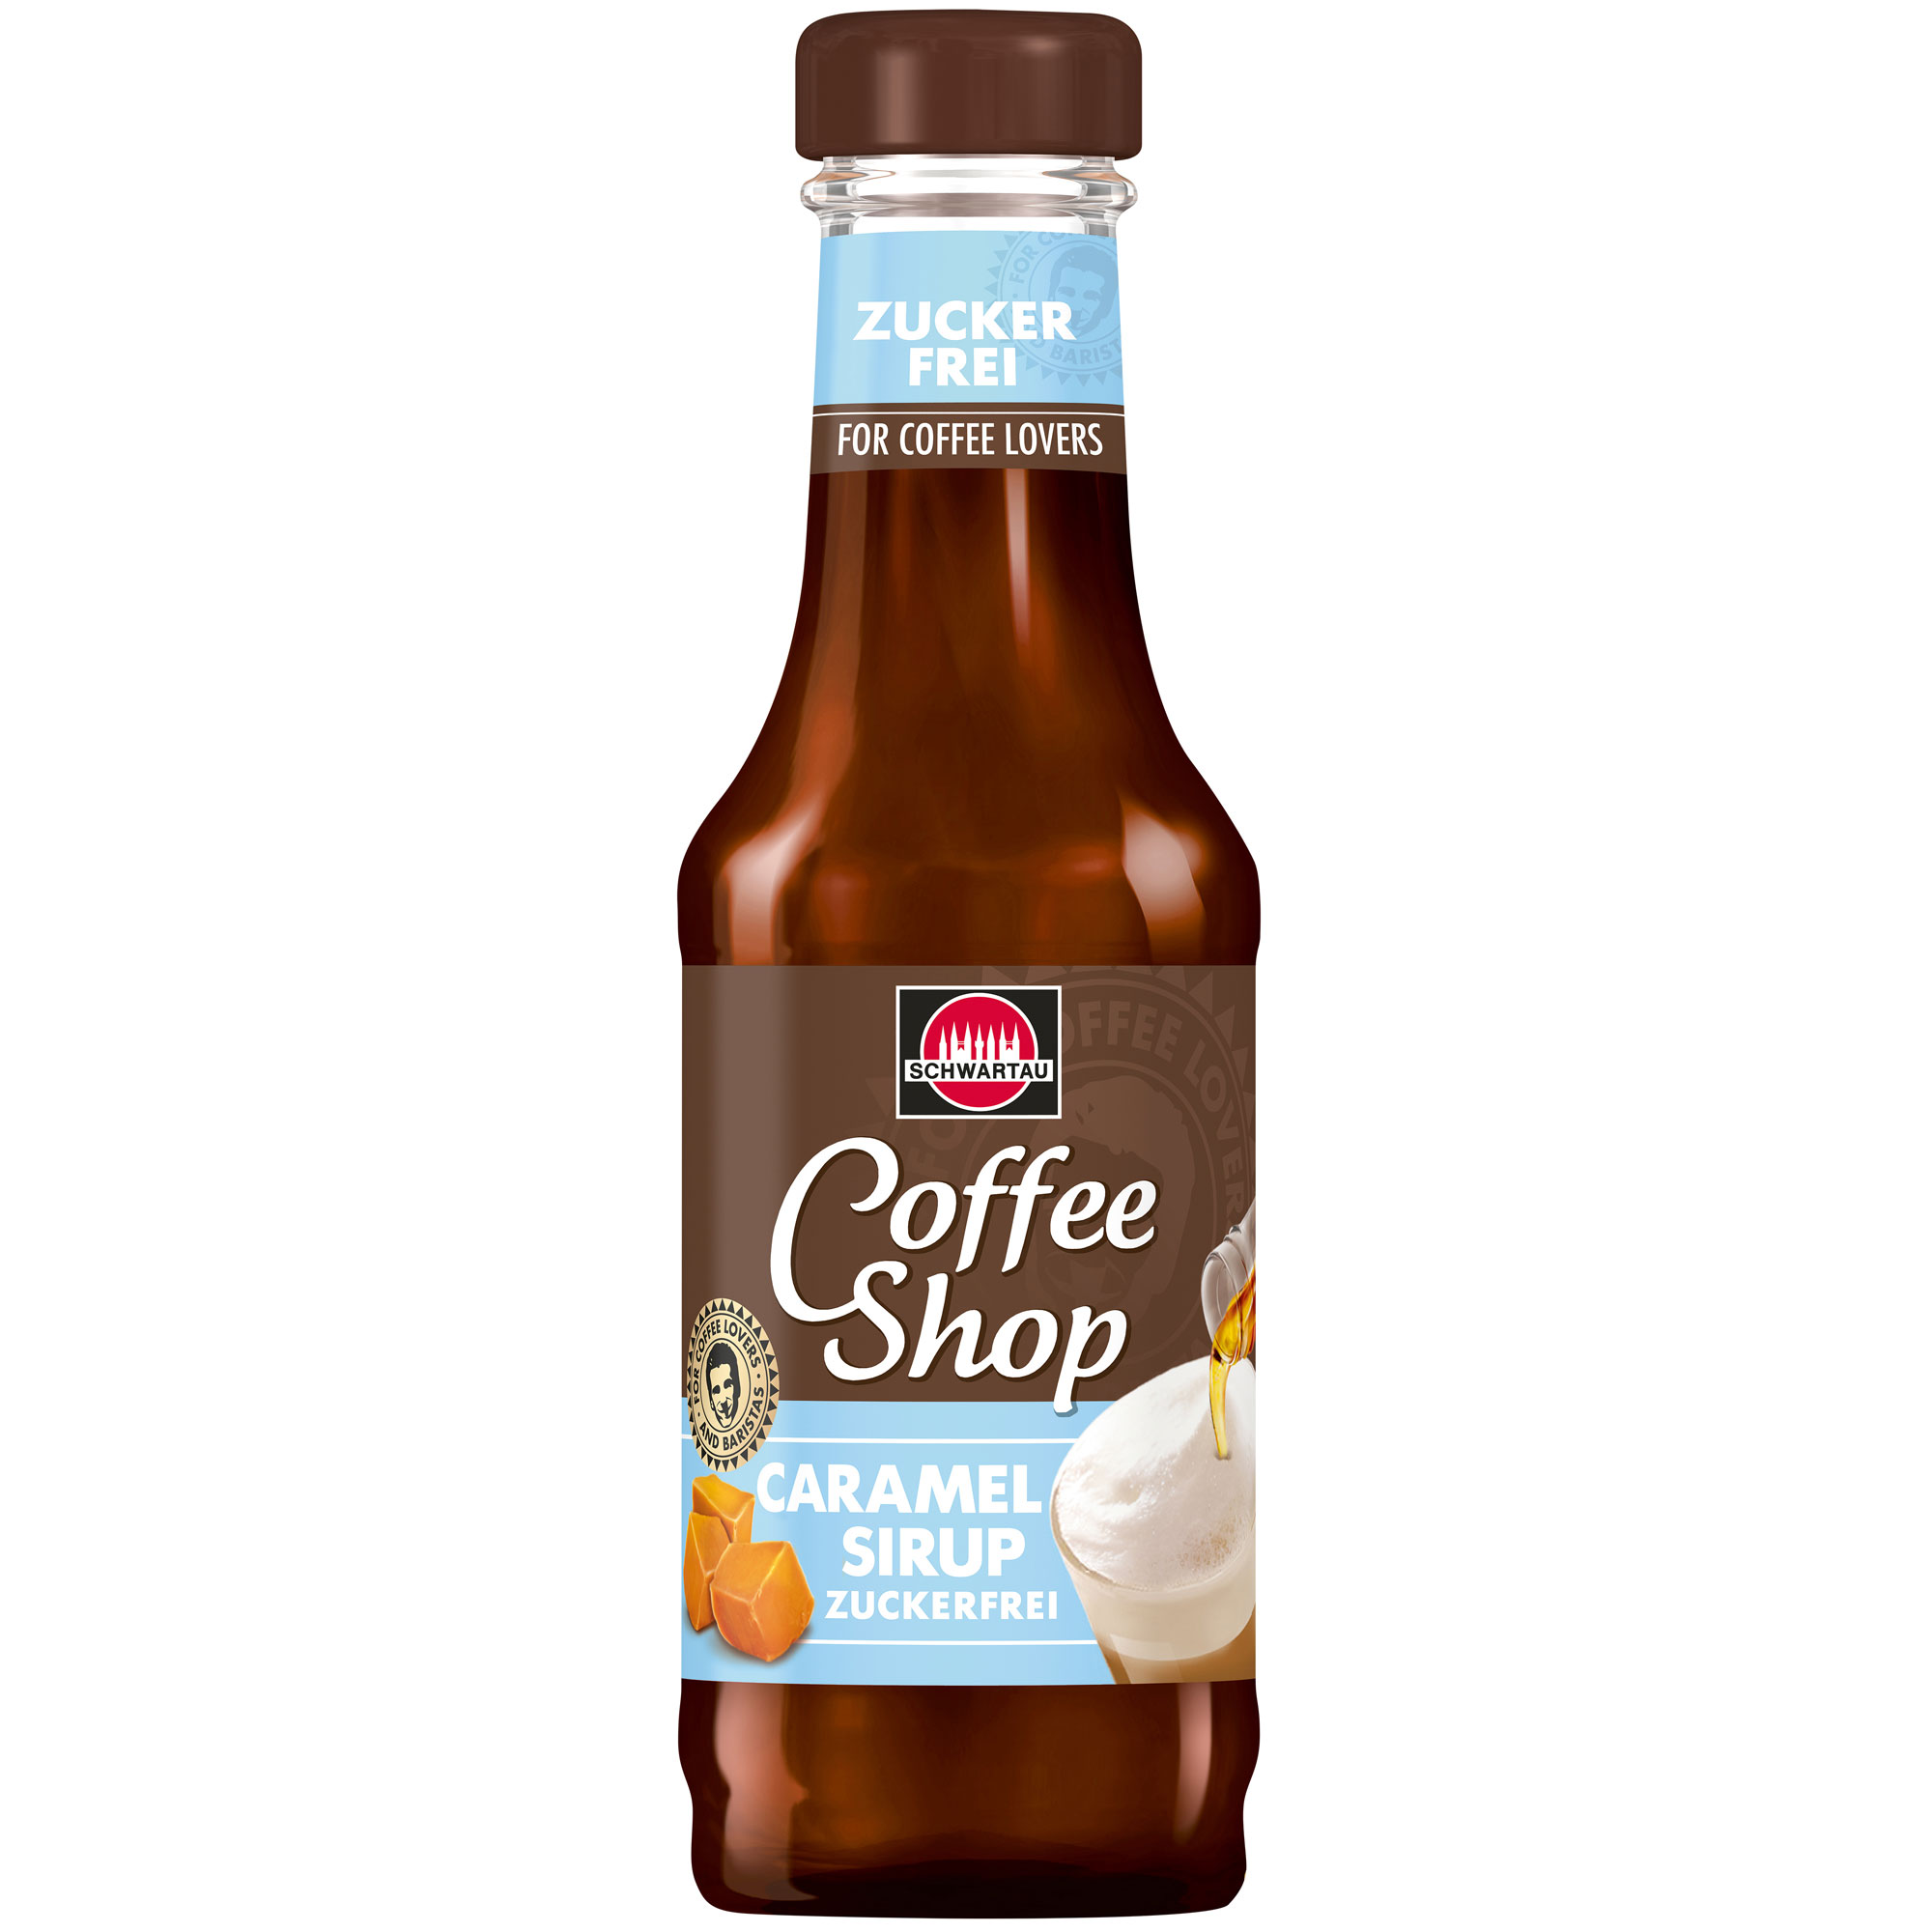 Schwartau Coffee Shop Caramel Sirup zuckerfrei 200ml | Online kaufen im ...